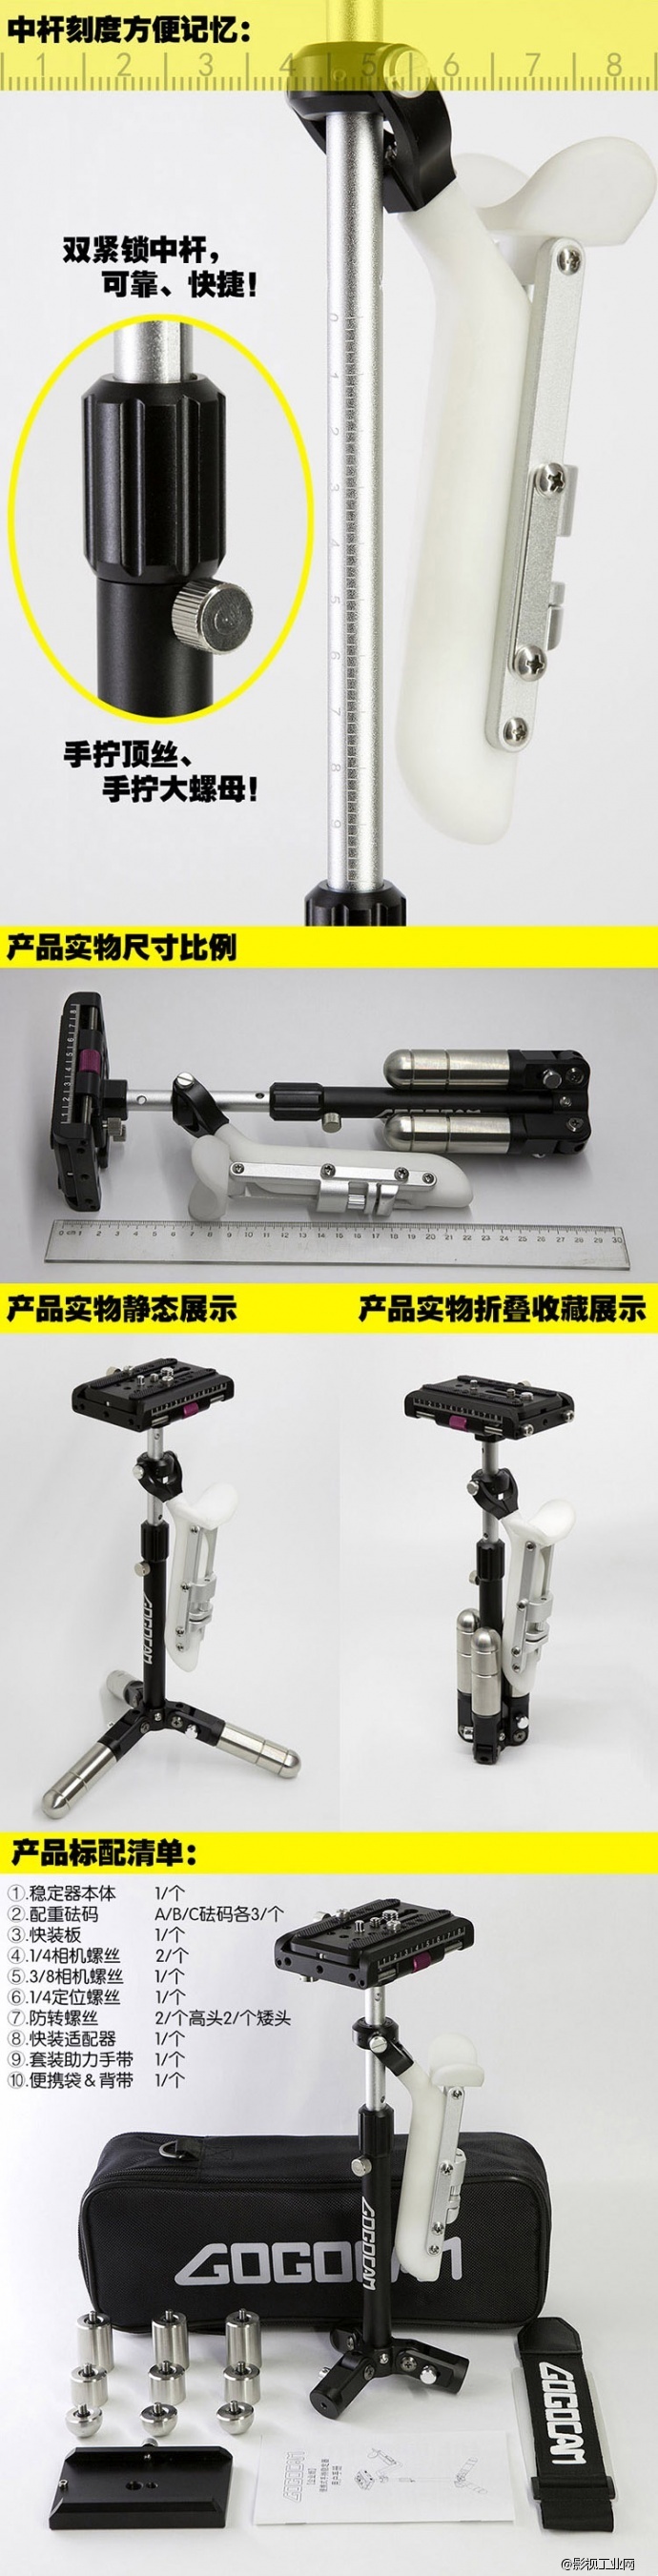 【闪购预告】GogoCAM[企业版] 摄像机配件单反手持稳定器,闪购立减500